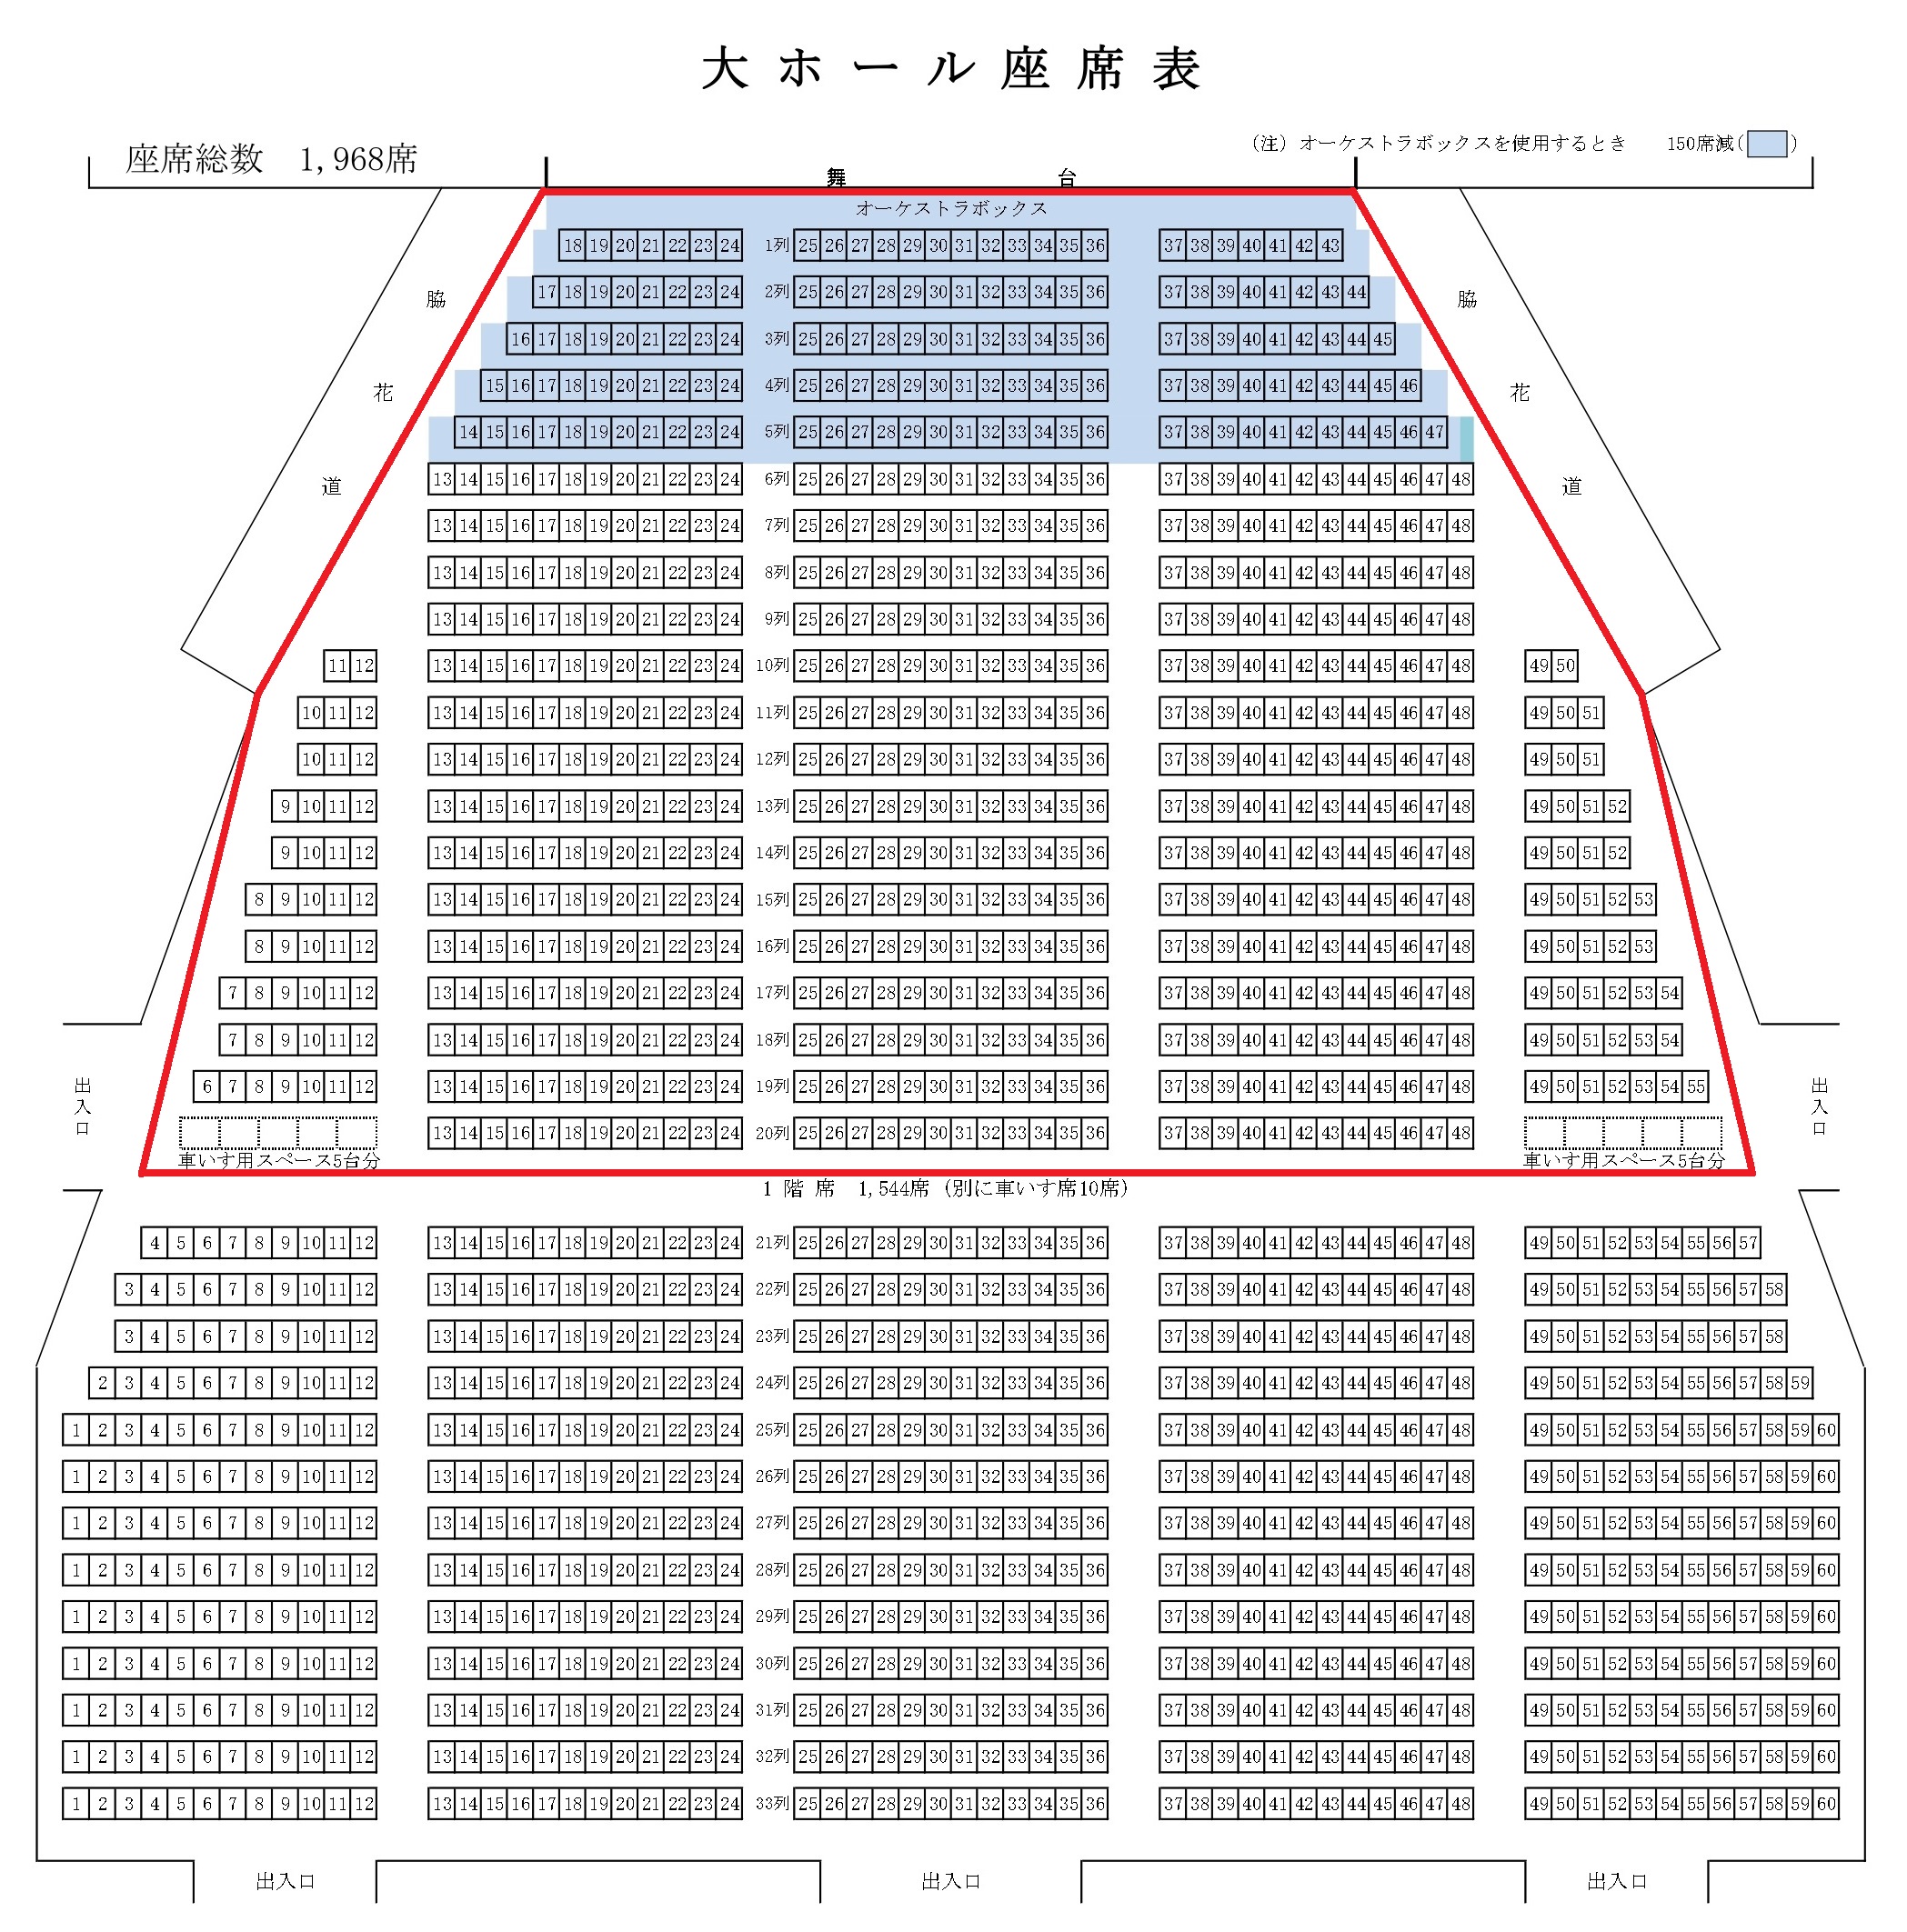 静岡市民文化会館大ホール座席表と見え方とキャパを徹底解説します 座席ウォッチャー